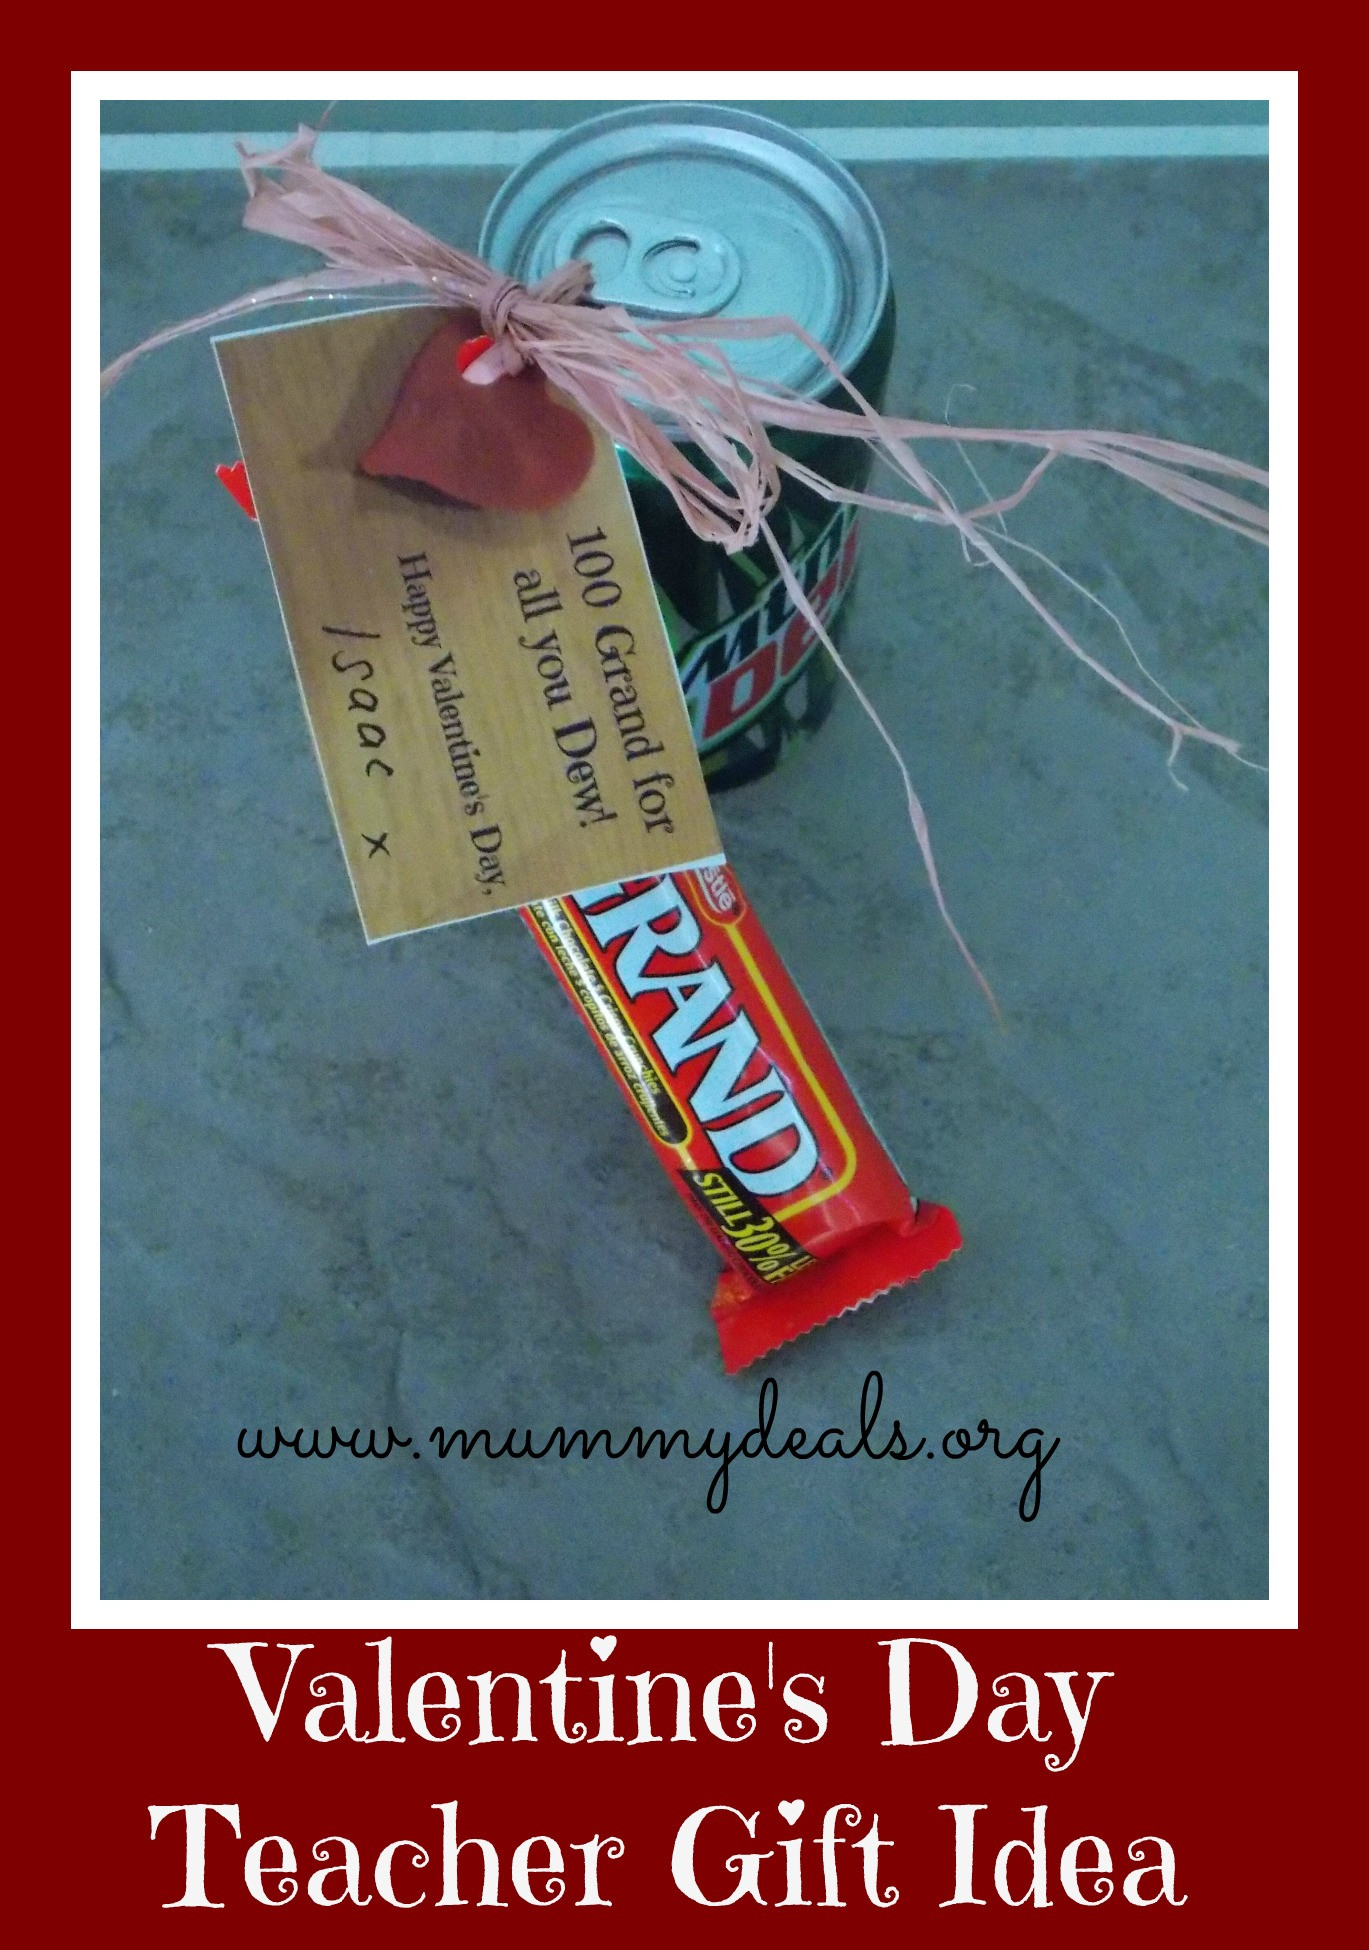 Valentine'S Day Teacher Gift Ideas
 6 Valentine s Day Teacher Gift Ideas Mummy Deals